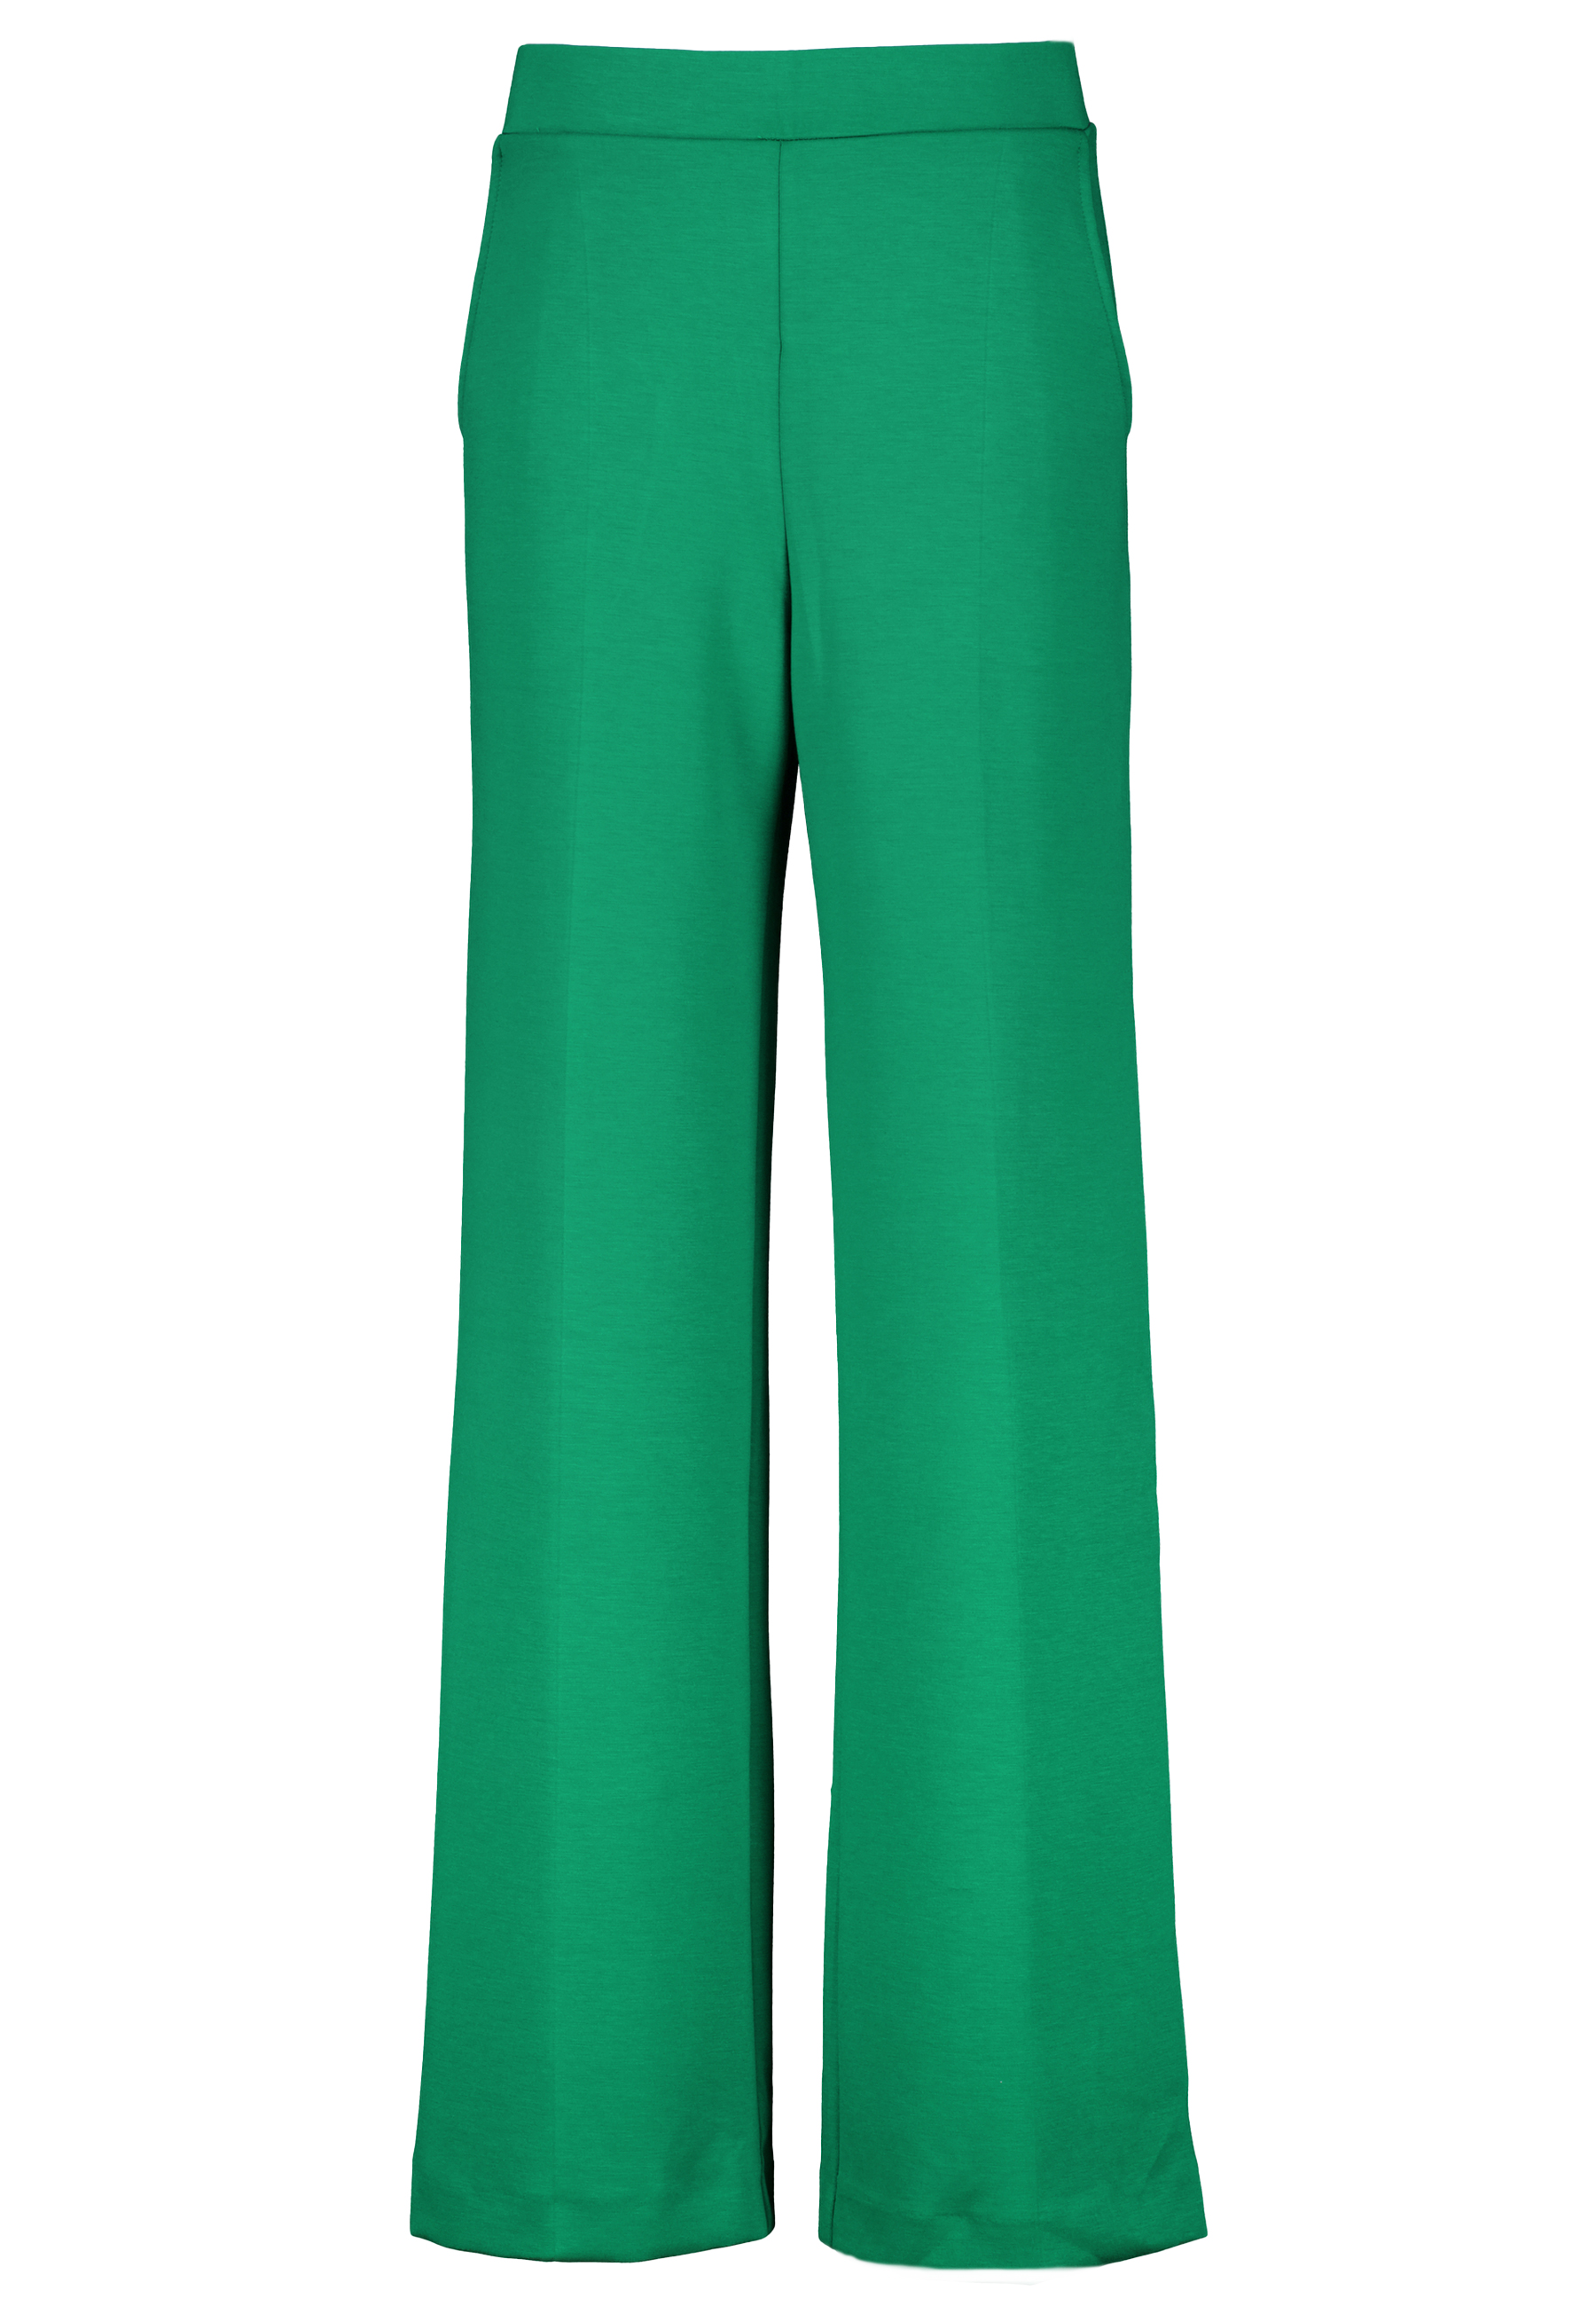 Ana Alcazar pantalons groen Dames maat 36